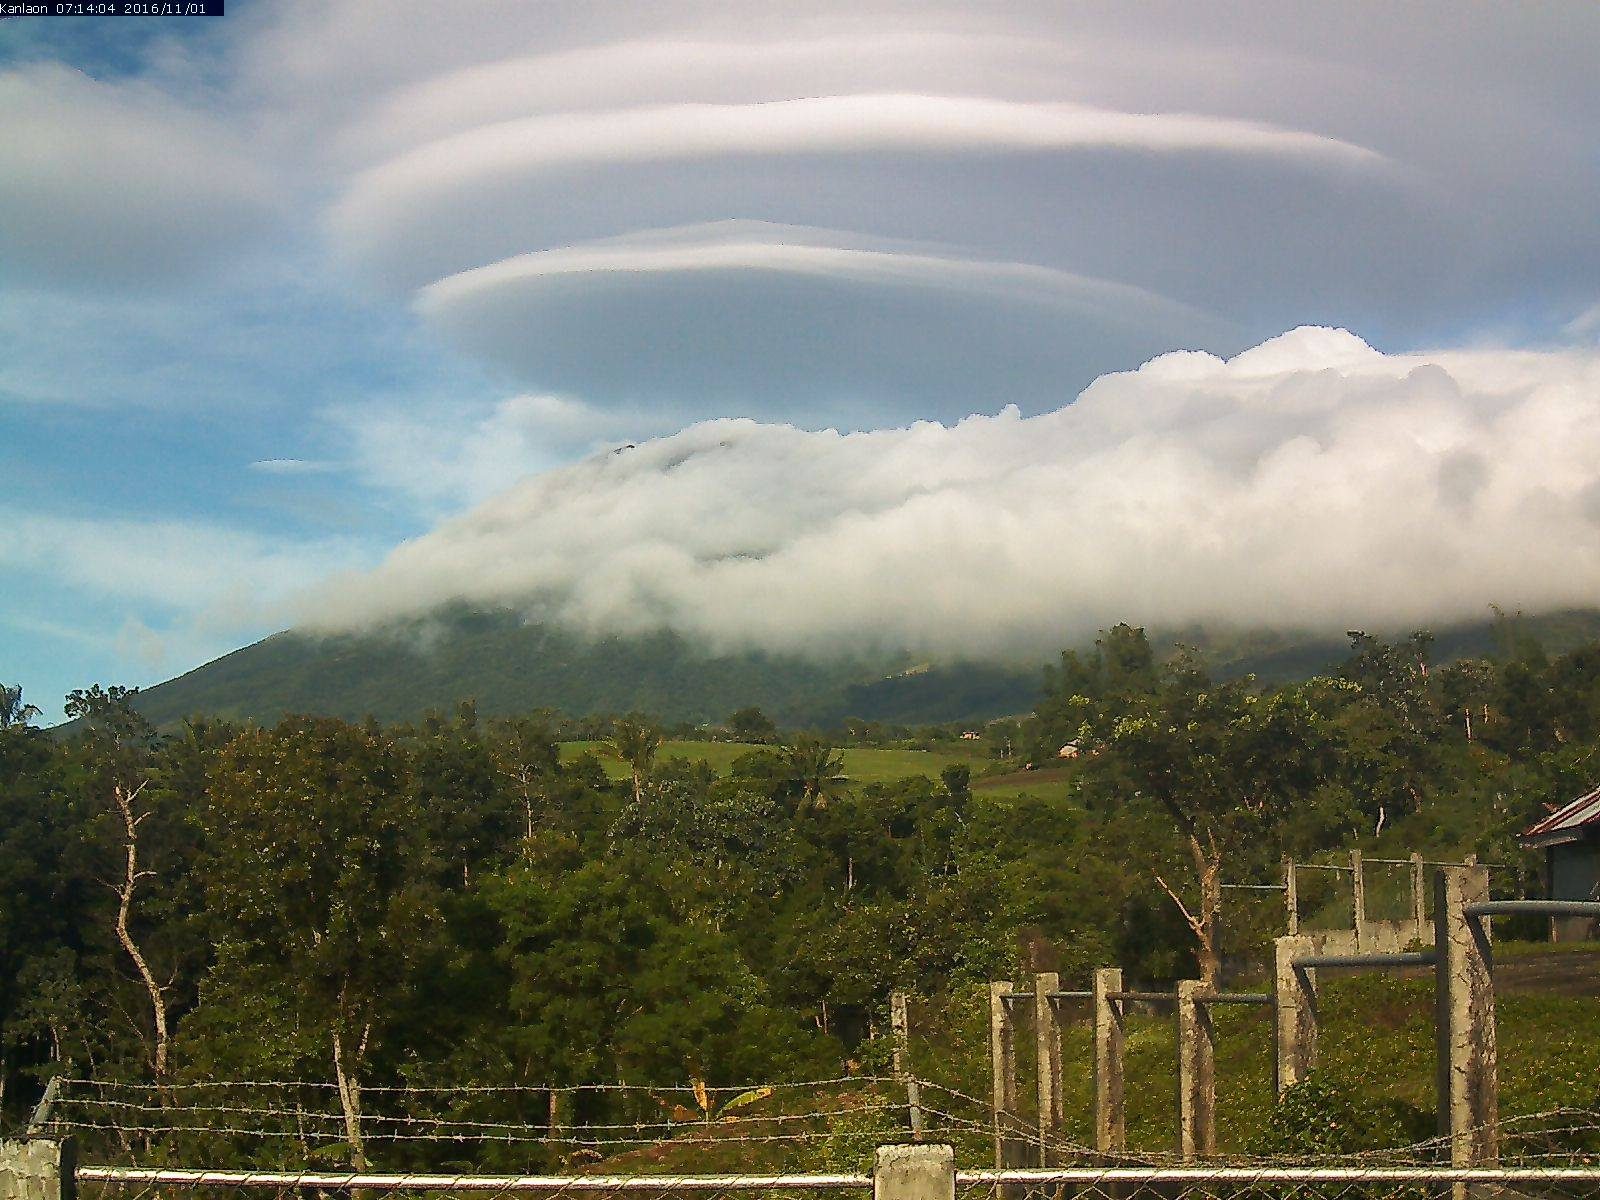 VIRAL: Lens-shaped clouds over Kanlaon Volcano amaze netizens